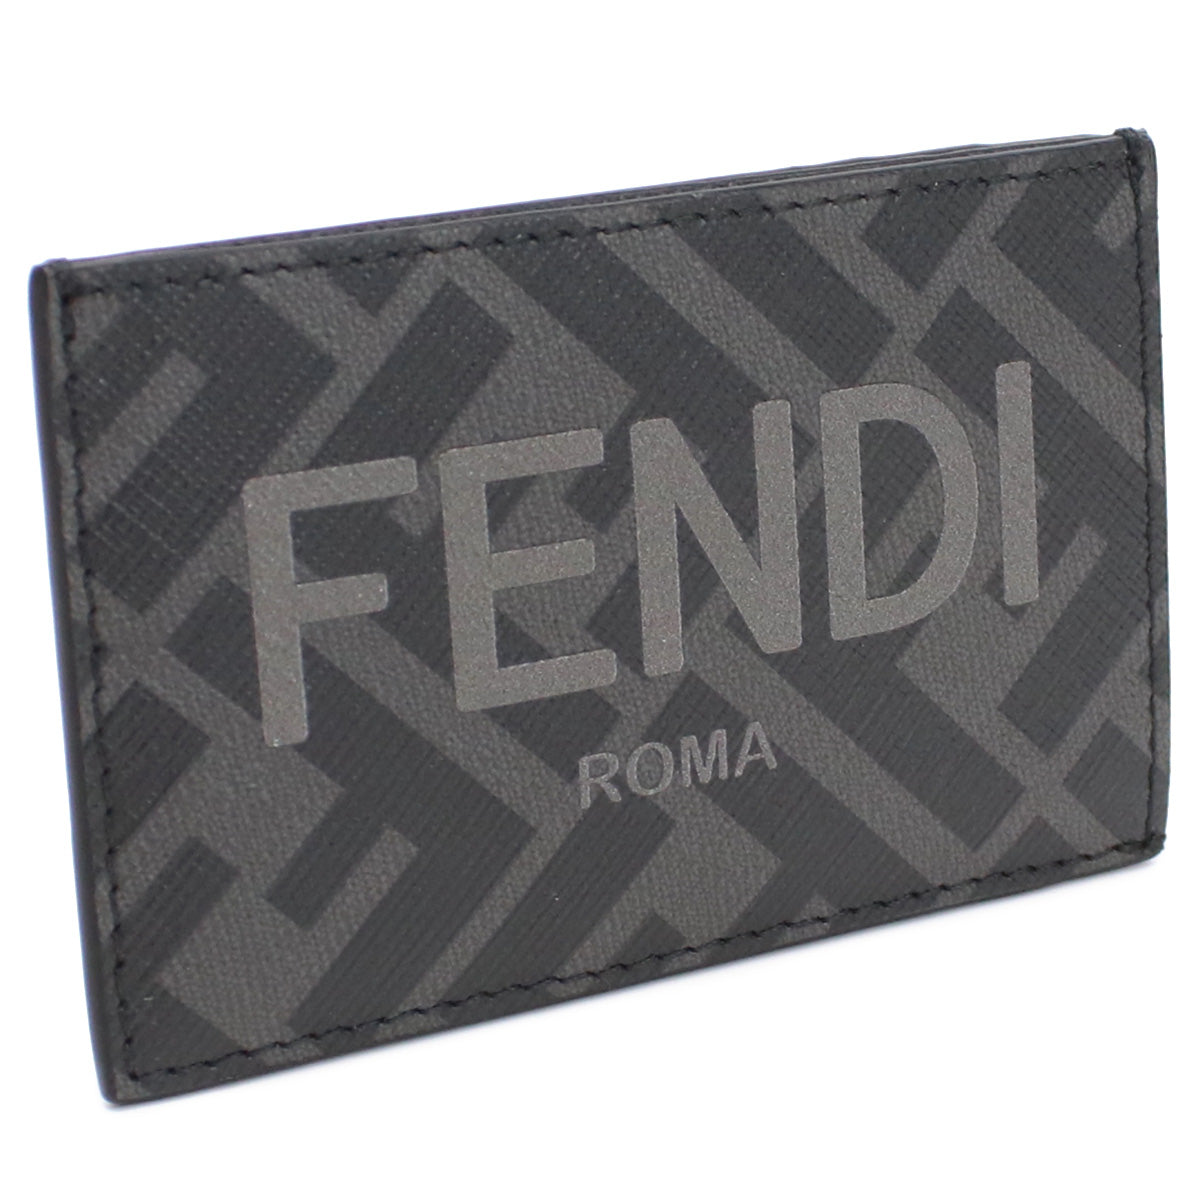 FENDI フェンディ 7M0328 カードケース ブラック グレー系 メンズ